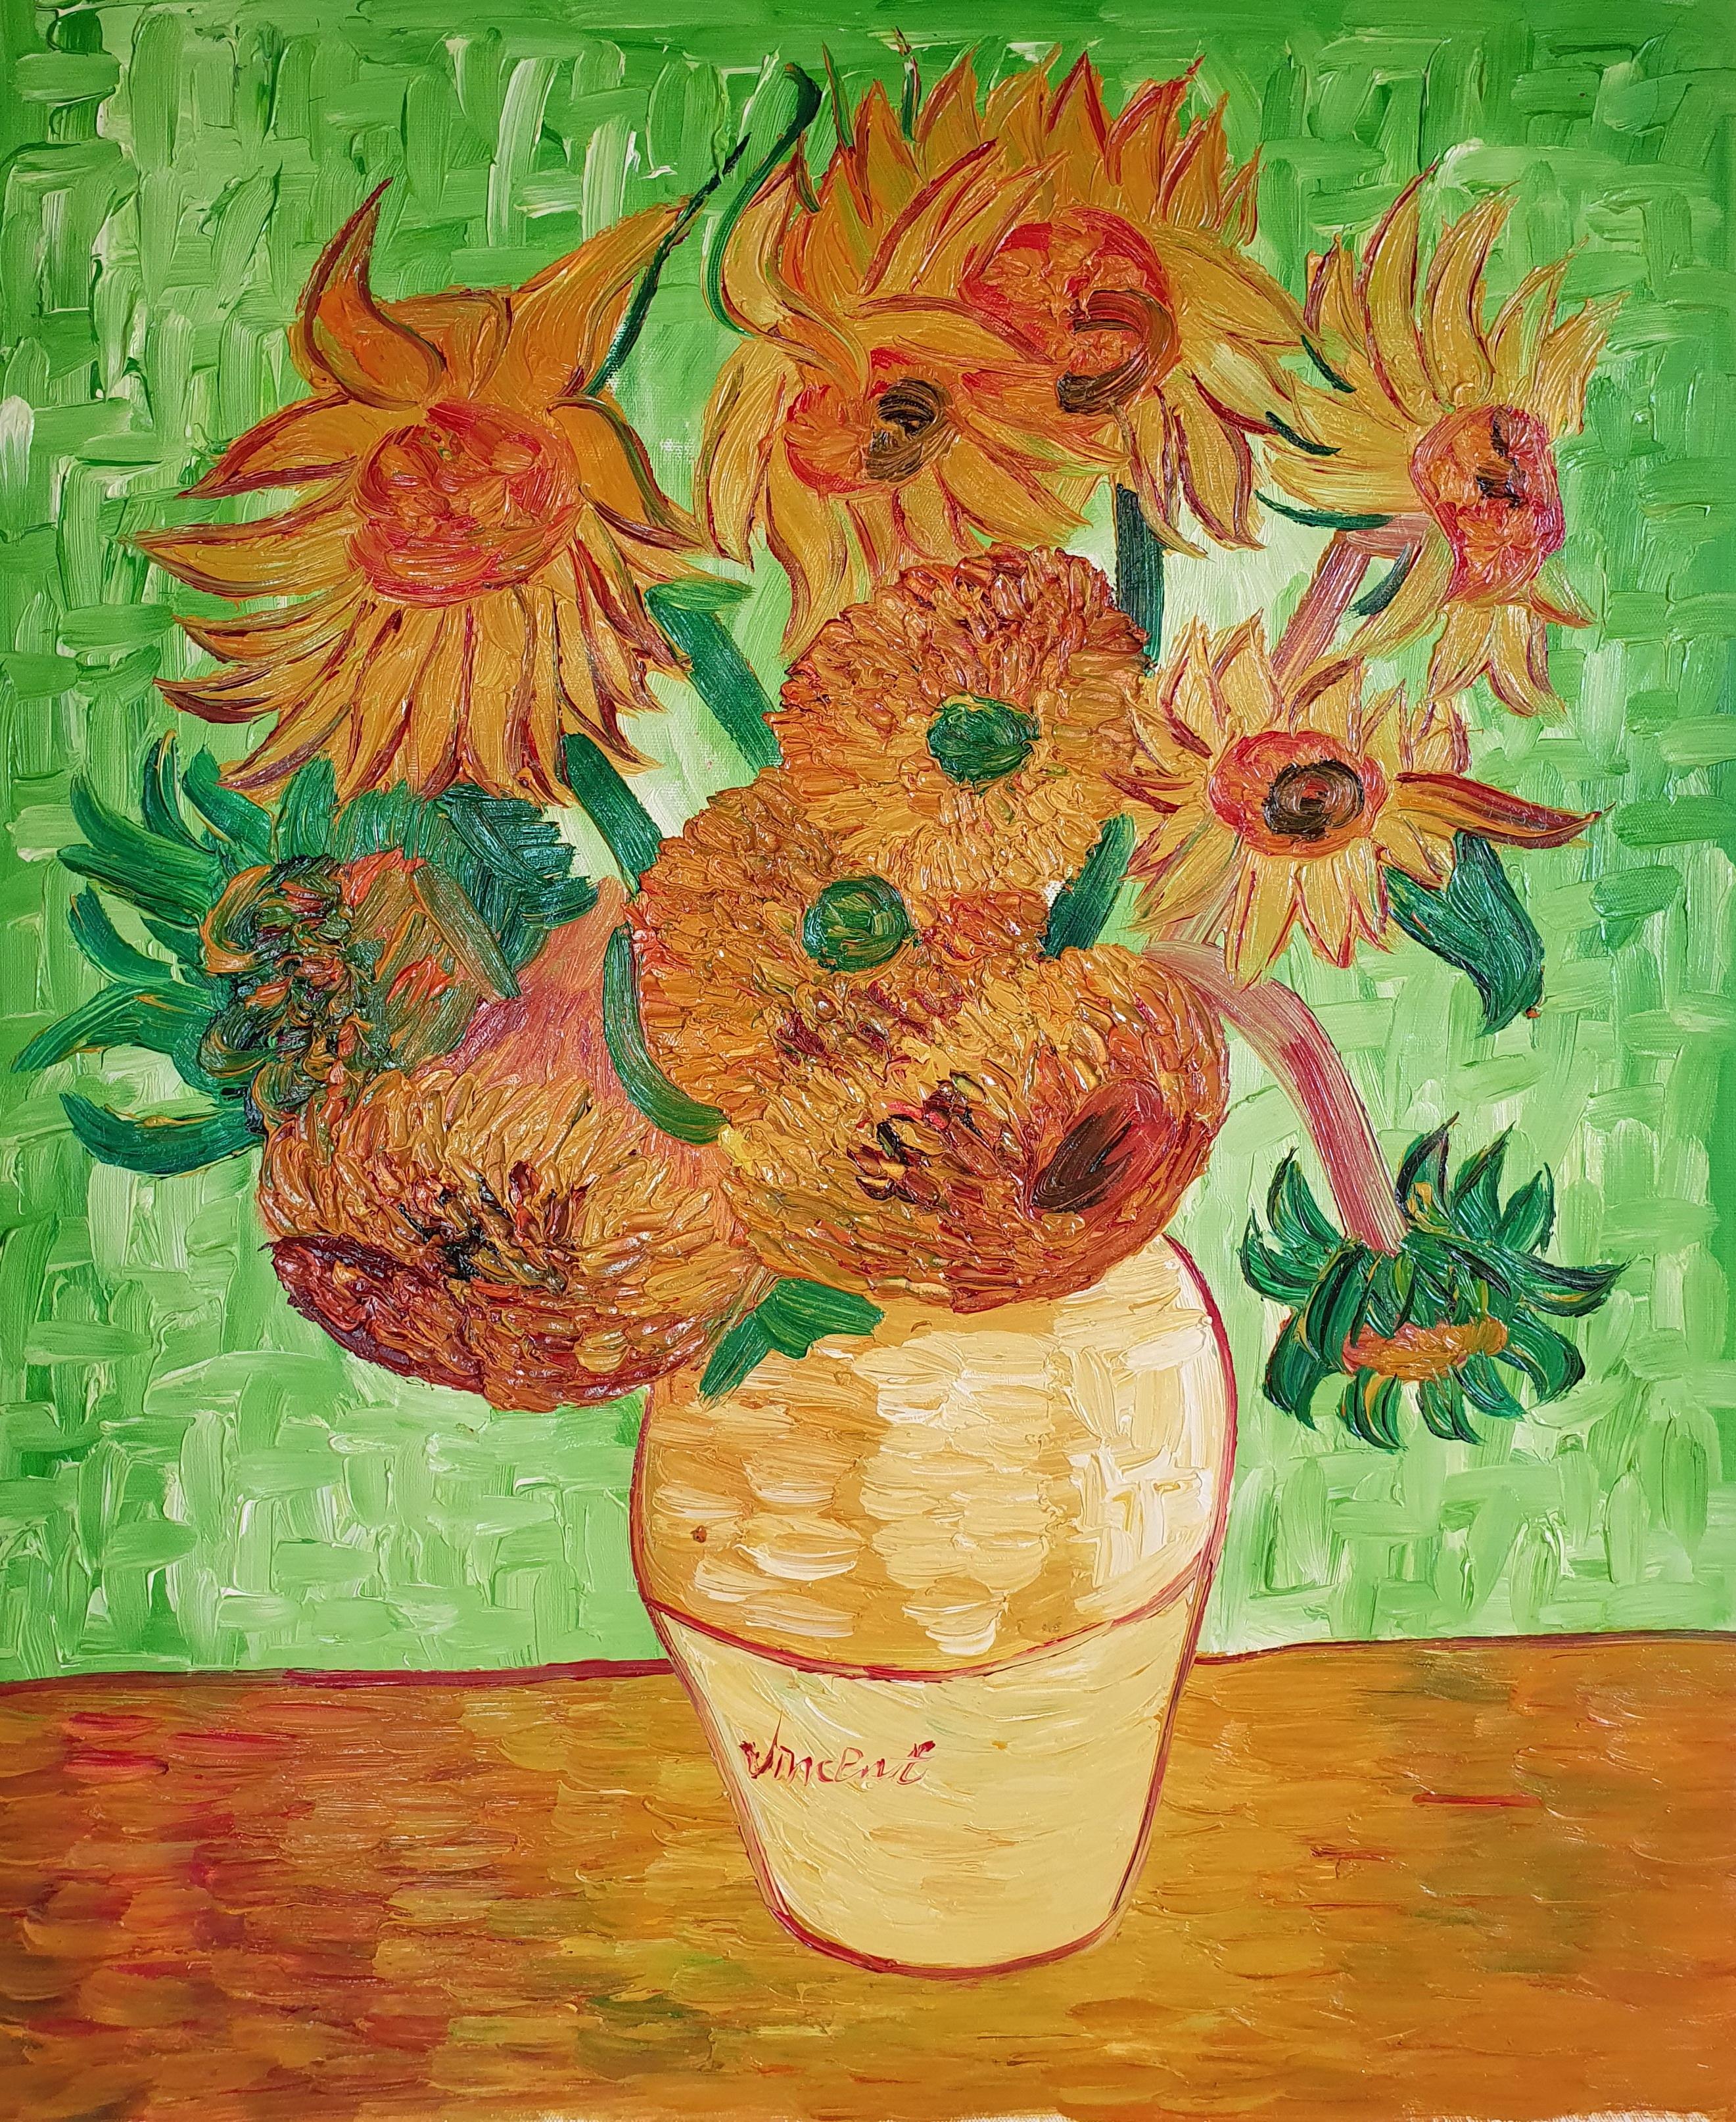 Sunflowers картина